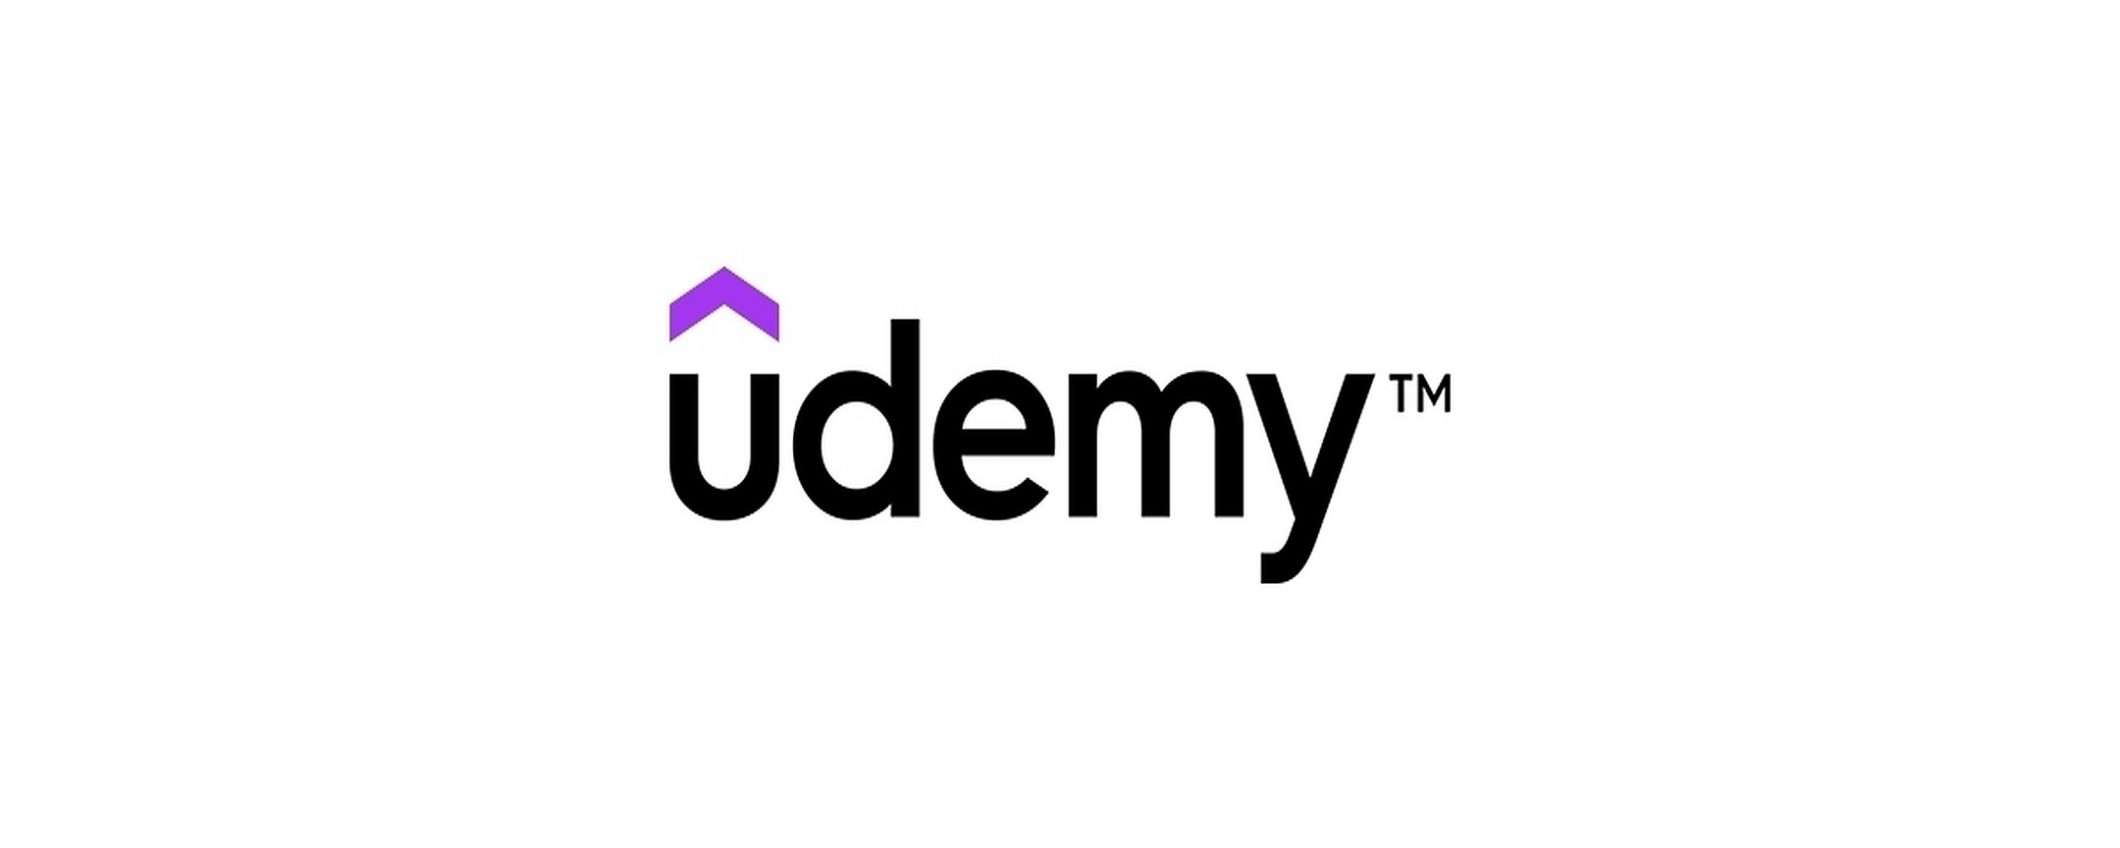 Accedi a Udemy per la prima volta e ottieni sconto esclusivo!